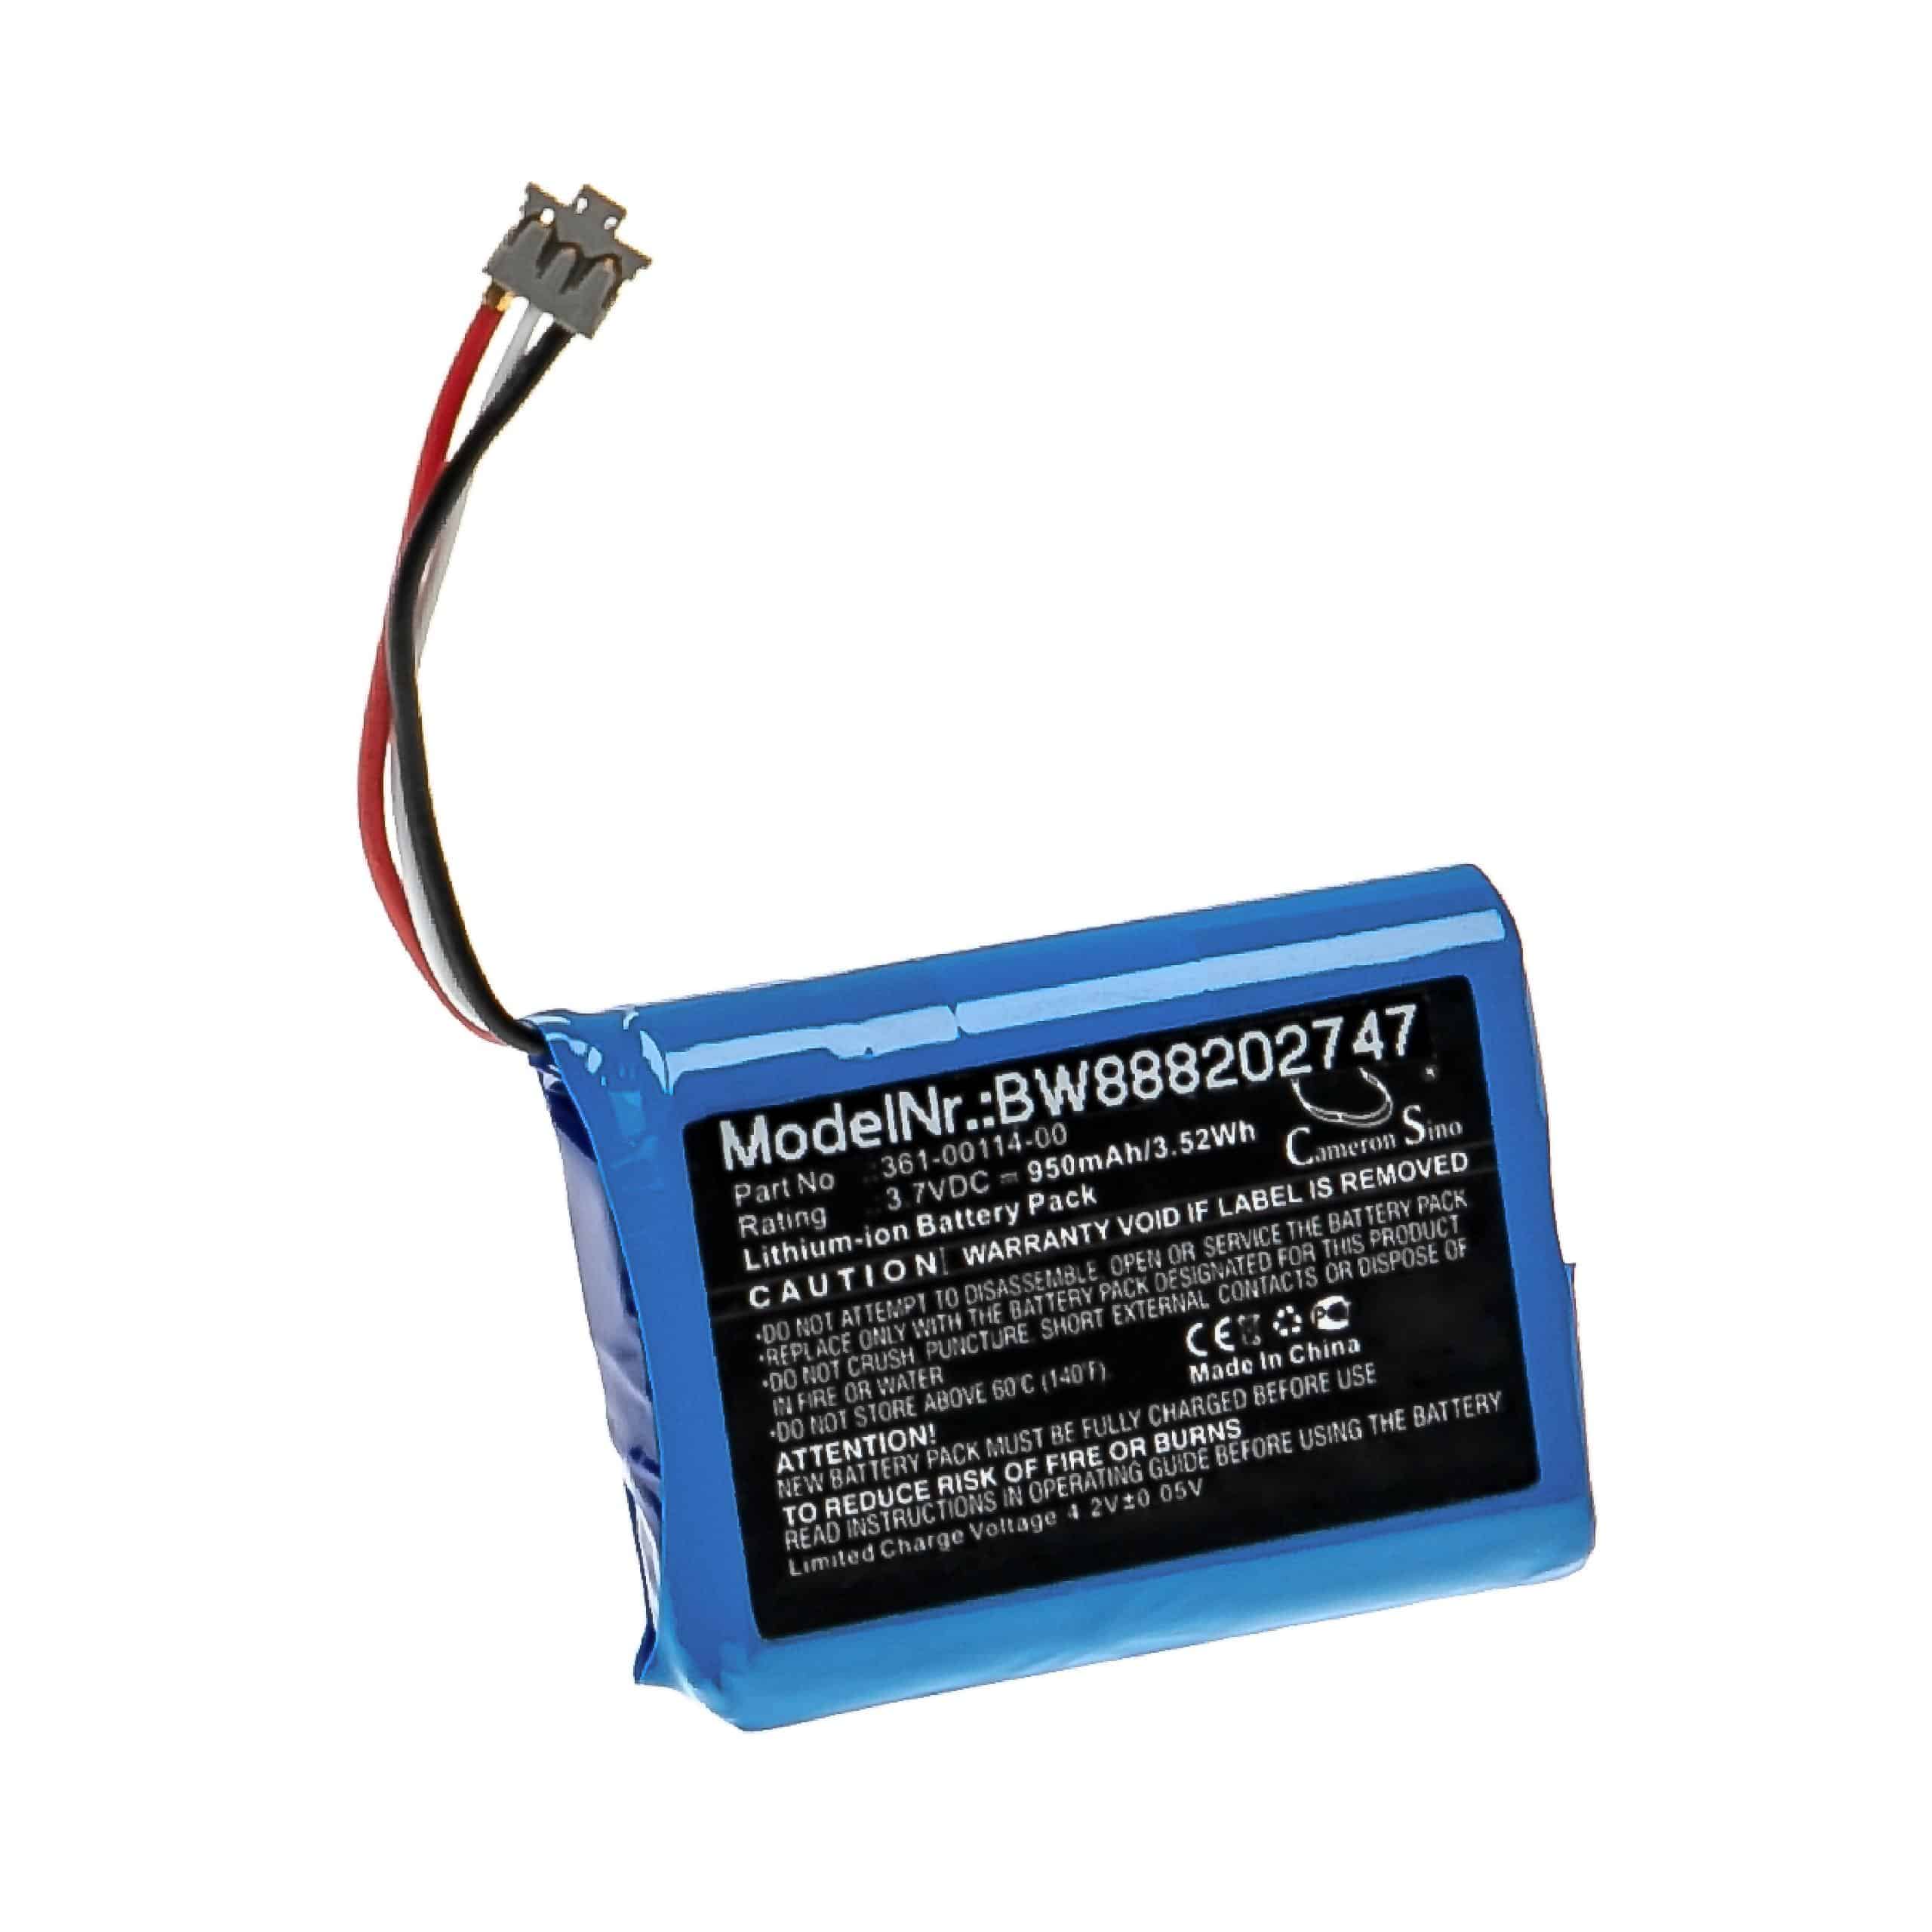 Batterie remplace Garmin 361-00114-00 pour communciateur satellite GPS - 950mAh 3,7V Li-ion